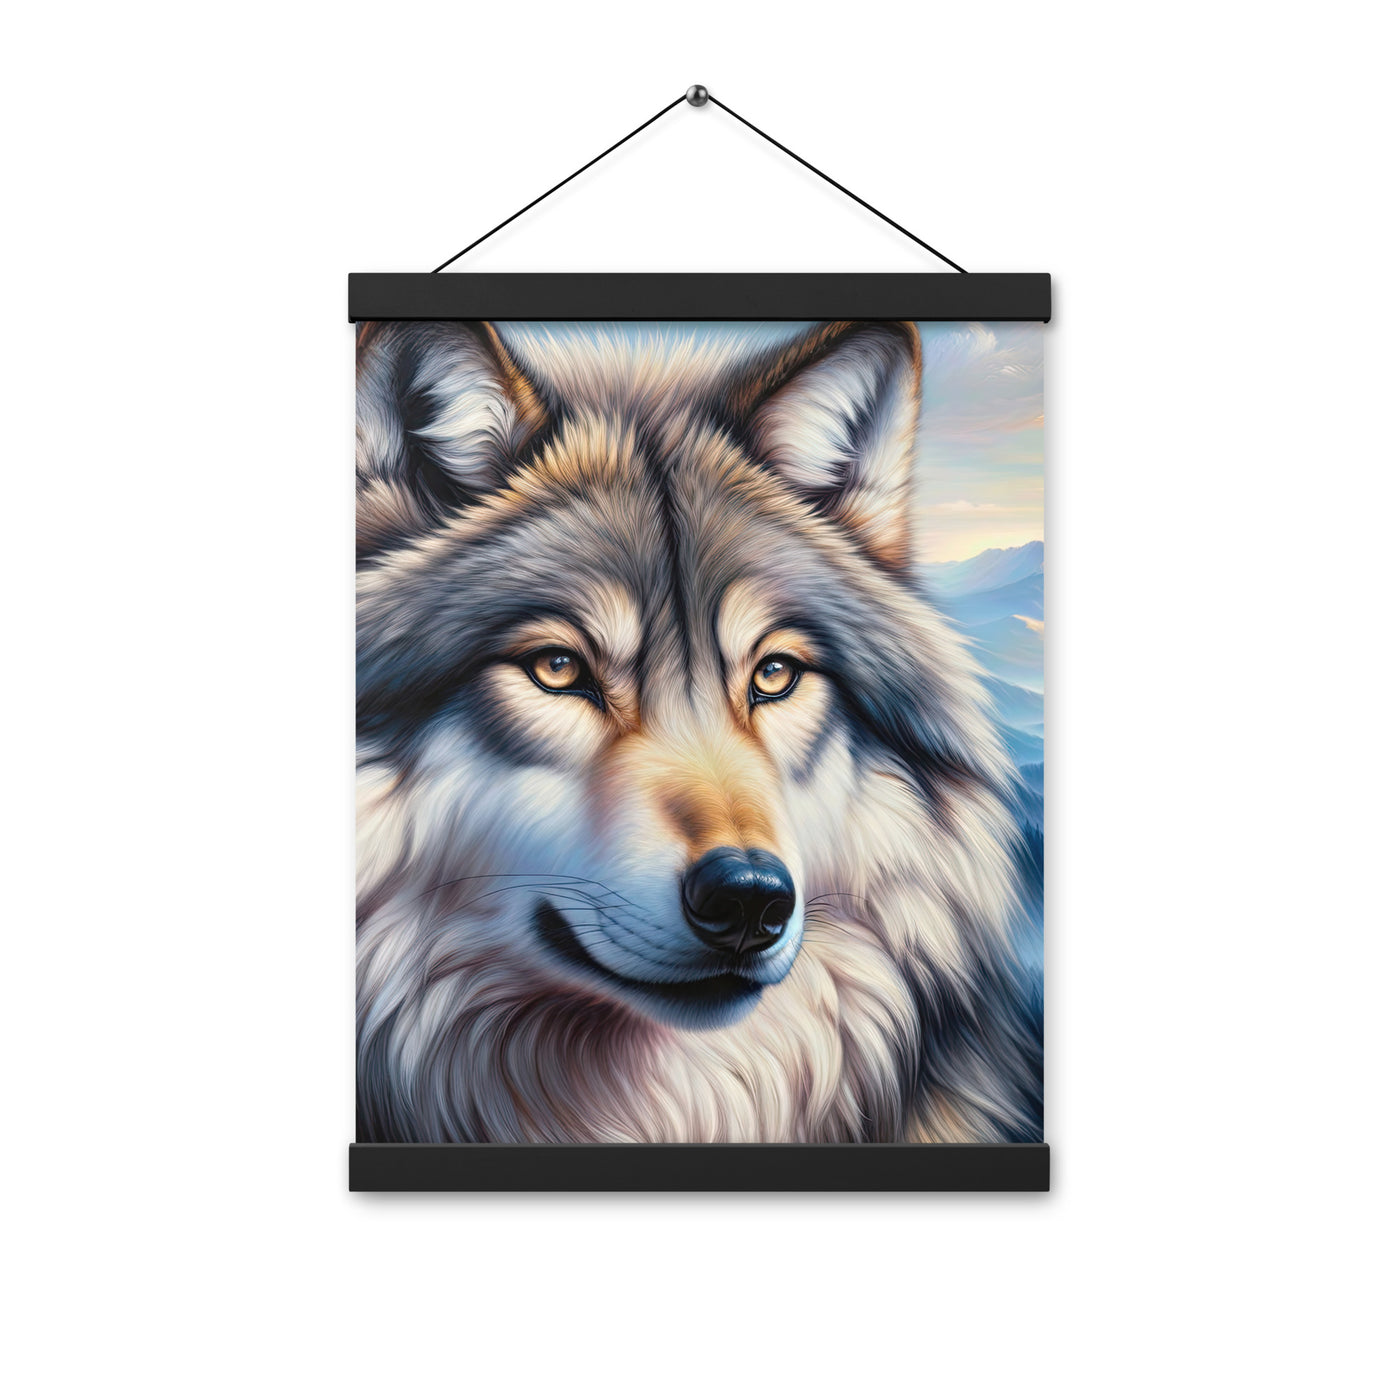 Ölgemäldeporträt eines majestätischen Wolfes mit intensiven Augen in der Berglandschaft (AN) - Premium Poster mit Aufhängung xxx yyy zzz 30.5 x 40.6 cm